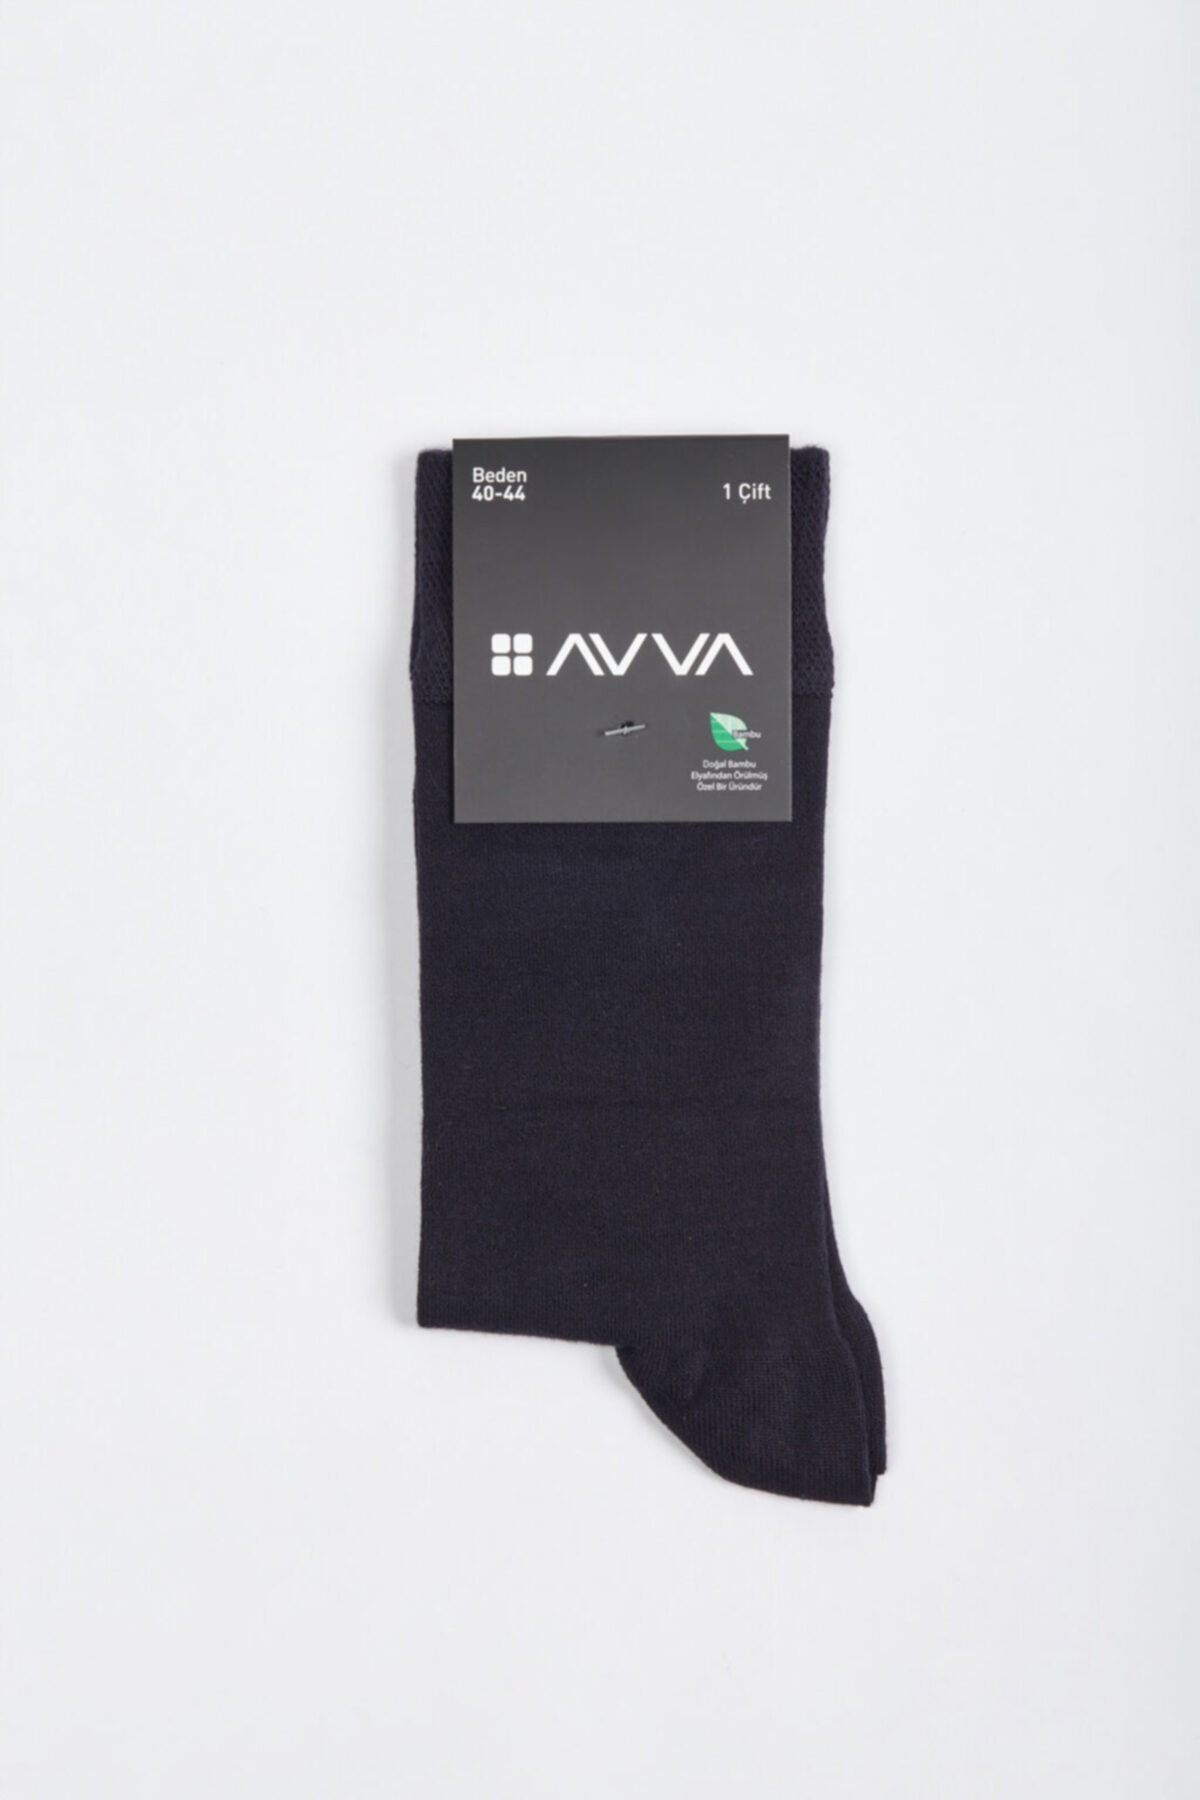 Avva Men's Navy Blue Crewneck Socks